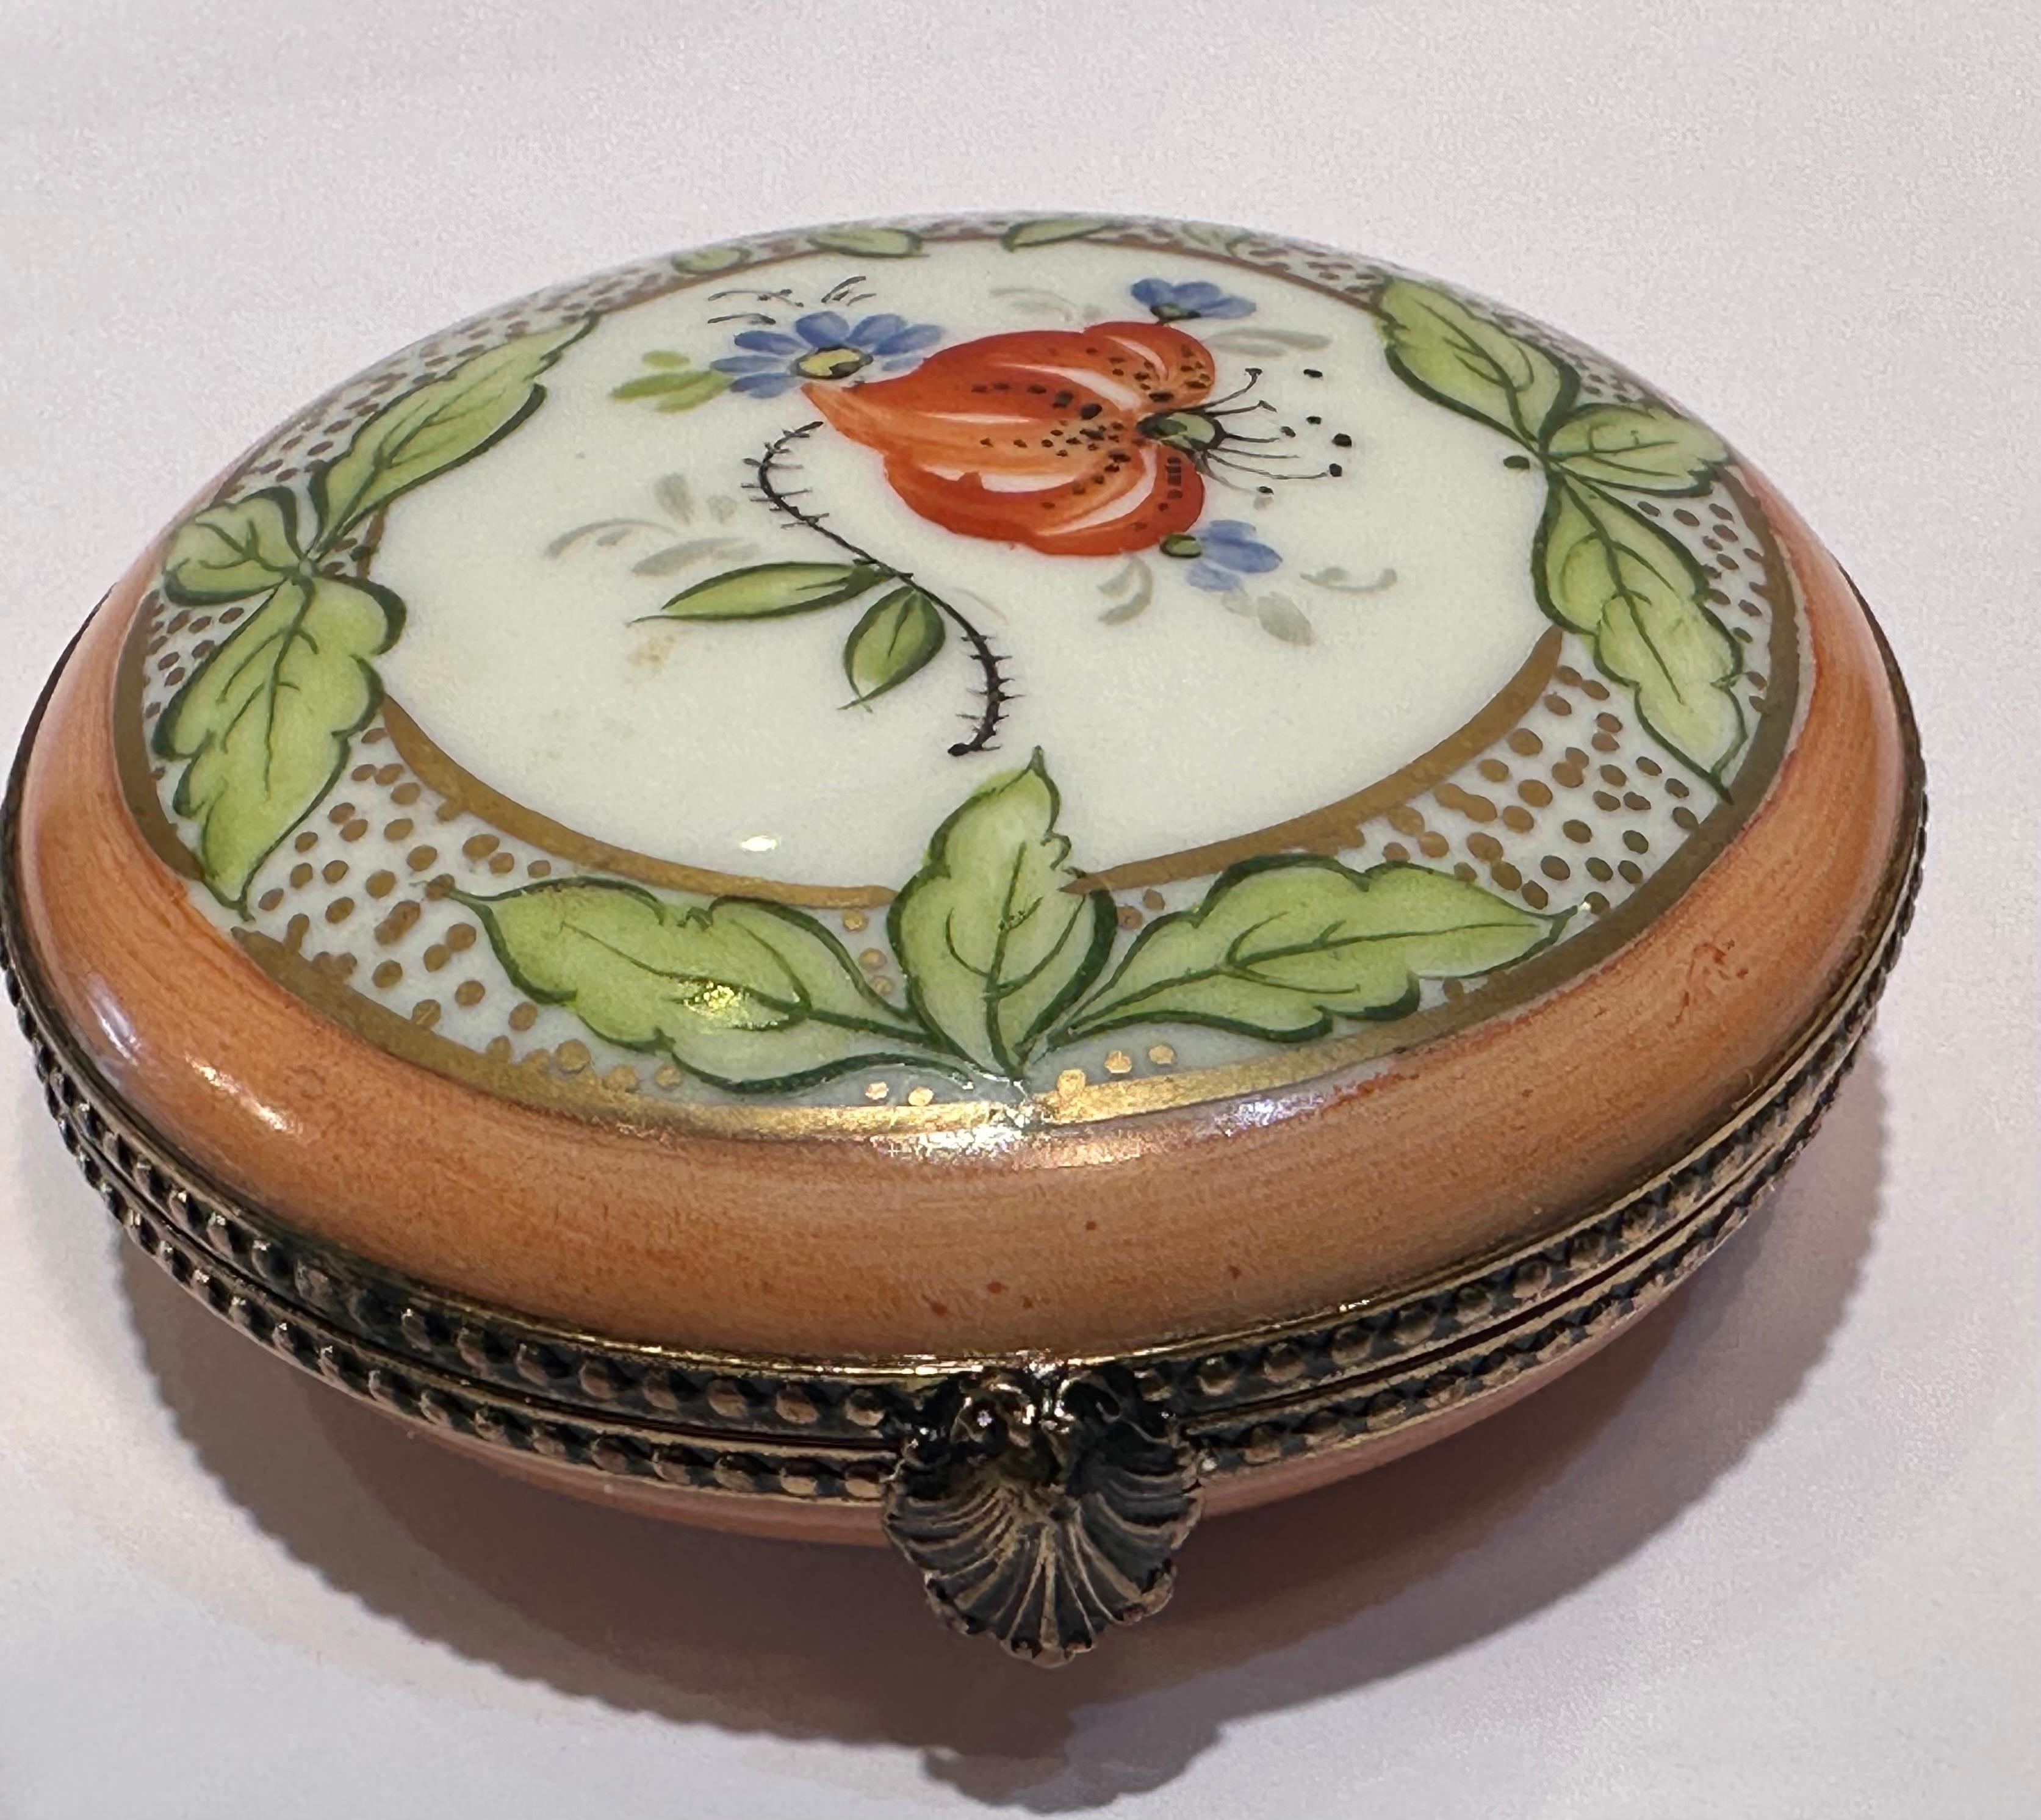 Ce magnifique coffret à bibelots de forme circulaire en porcelaine de Limoges est fabriqué à la main sur un fond pêche et blanc. Il est habilement peint à la main d'un motif floral et de feuilles et richement rehaussé de points et d'une garniture en